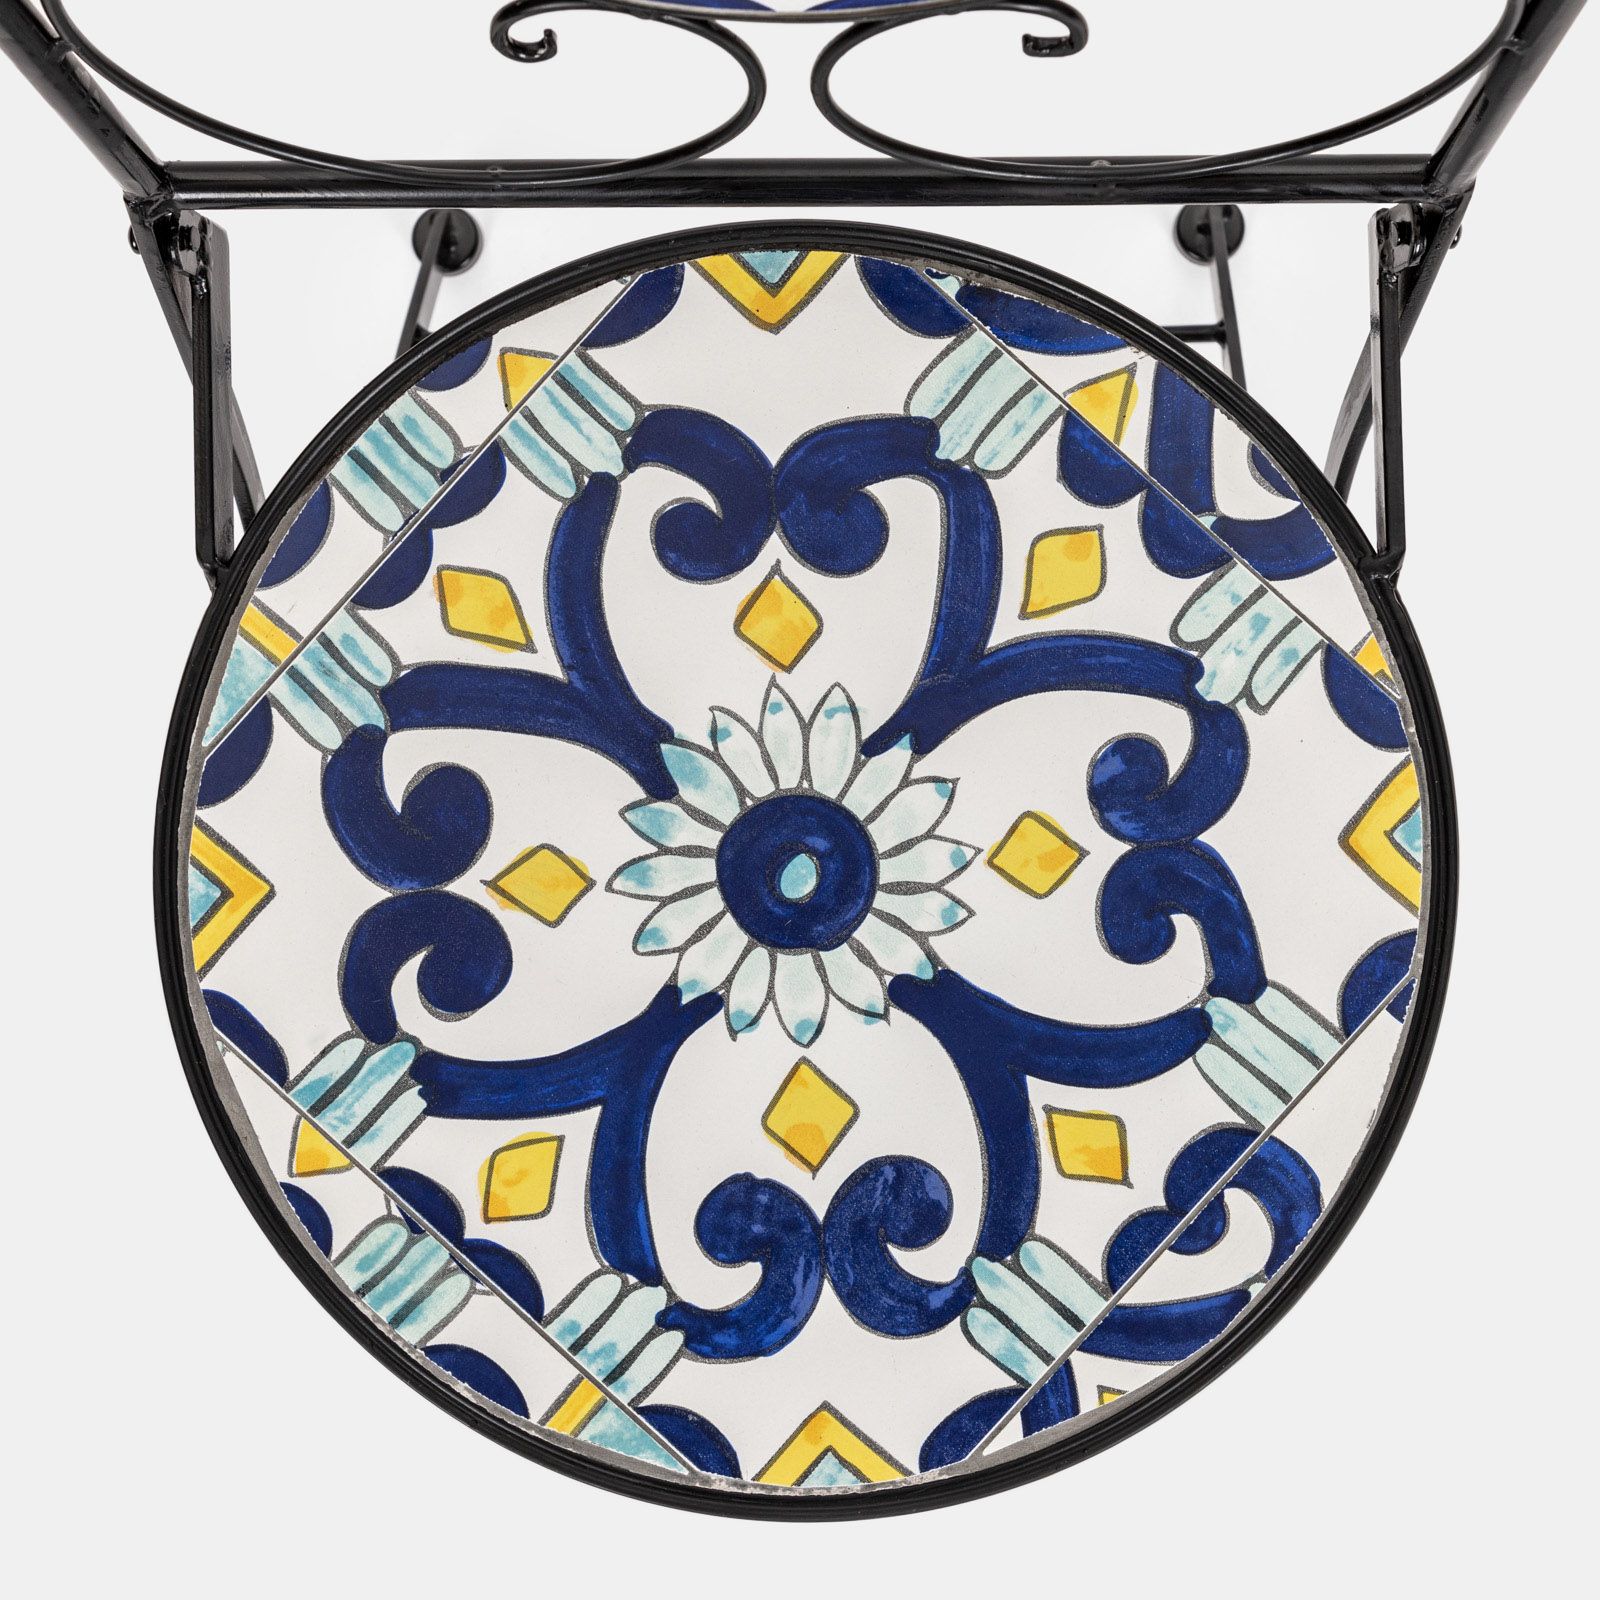 Tavolo da giardino con decorazione mosaico a fiori blu - Otranto